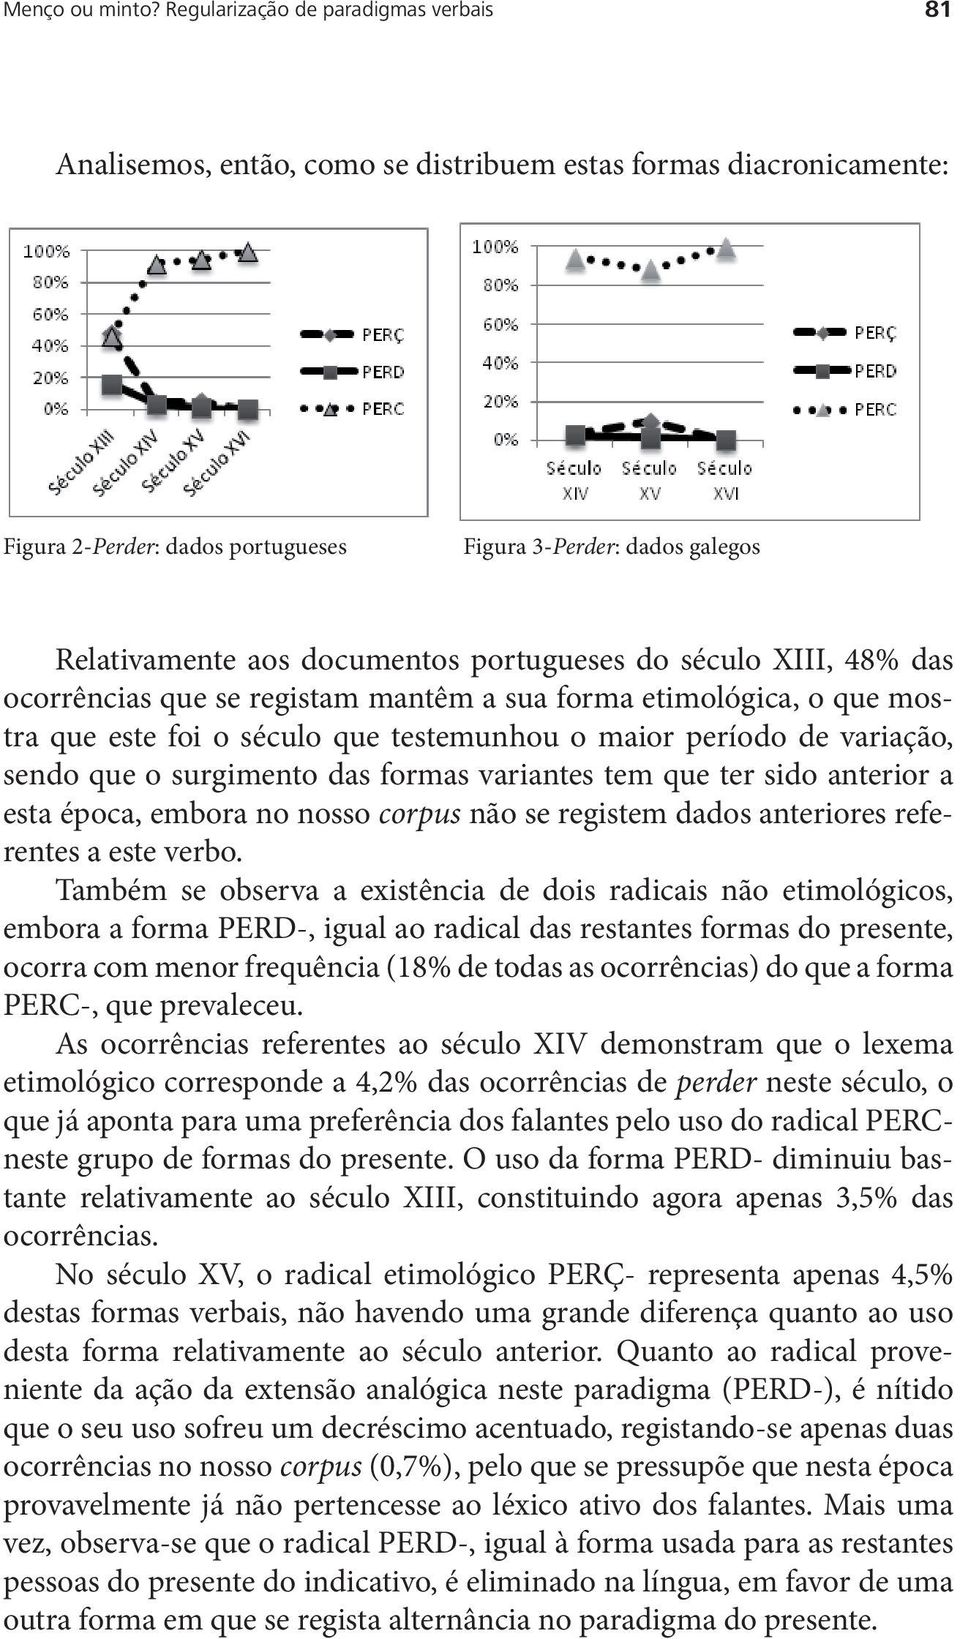 dados portugueses Figura 3-Perder: dados galegos galegos Relativamente aos documentos portugueses do século XIII, 48% das ocorrências que se registam mantêm a sua forma etimológica, o que mostra que